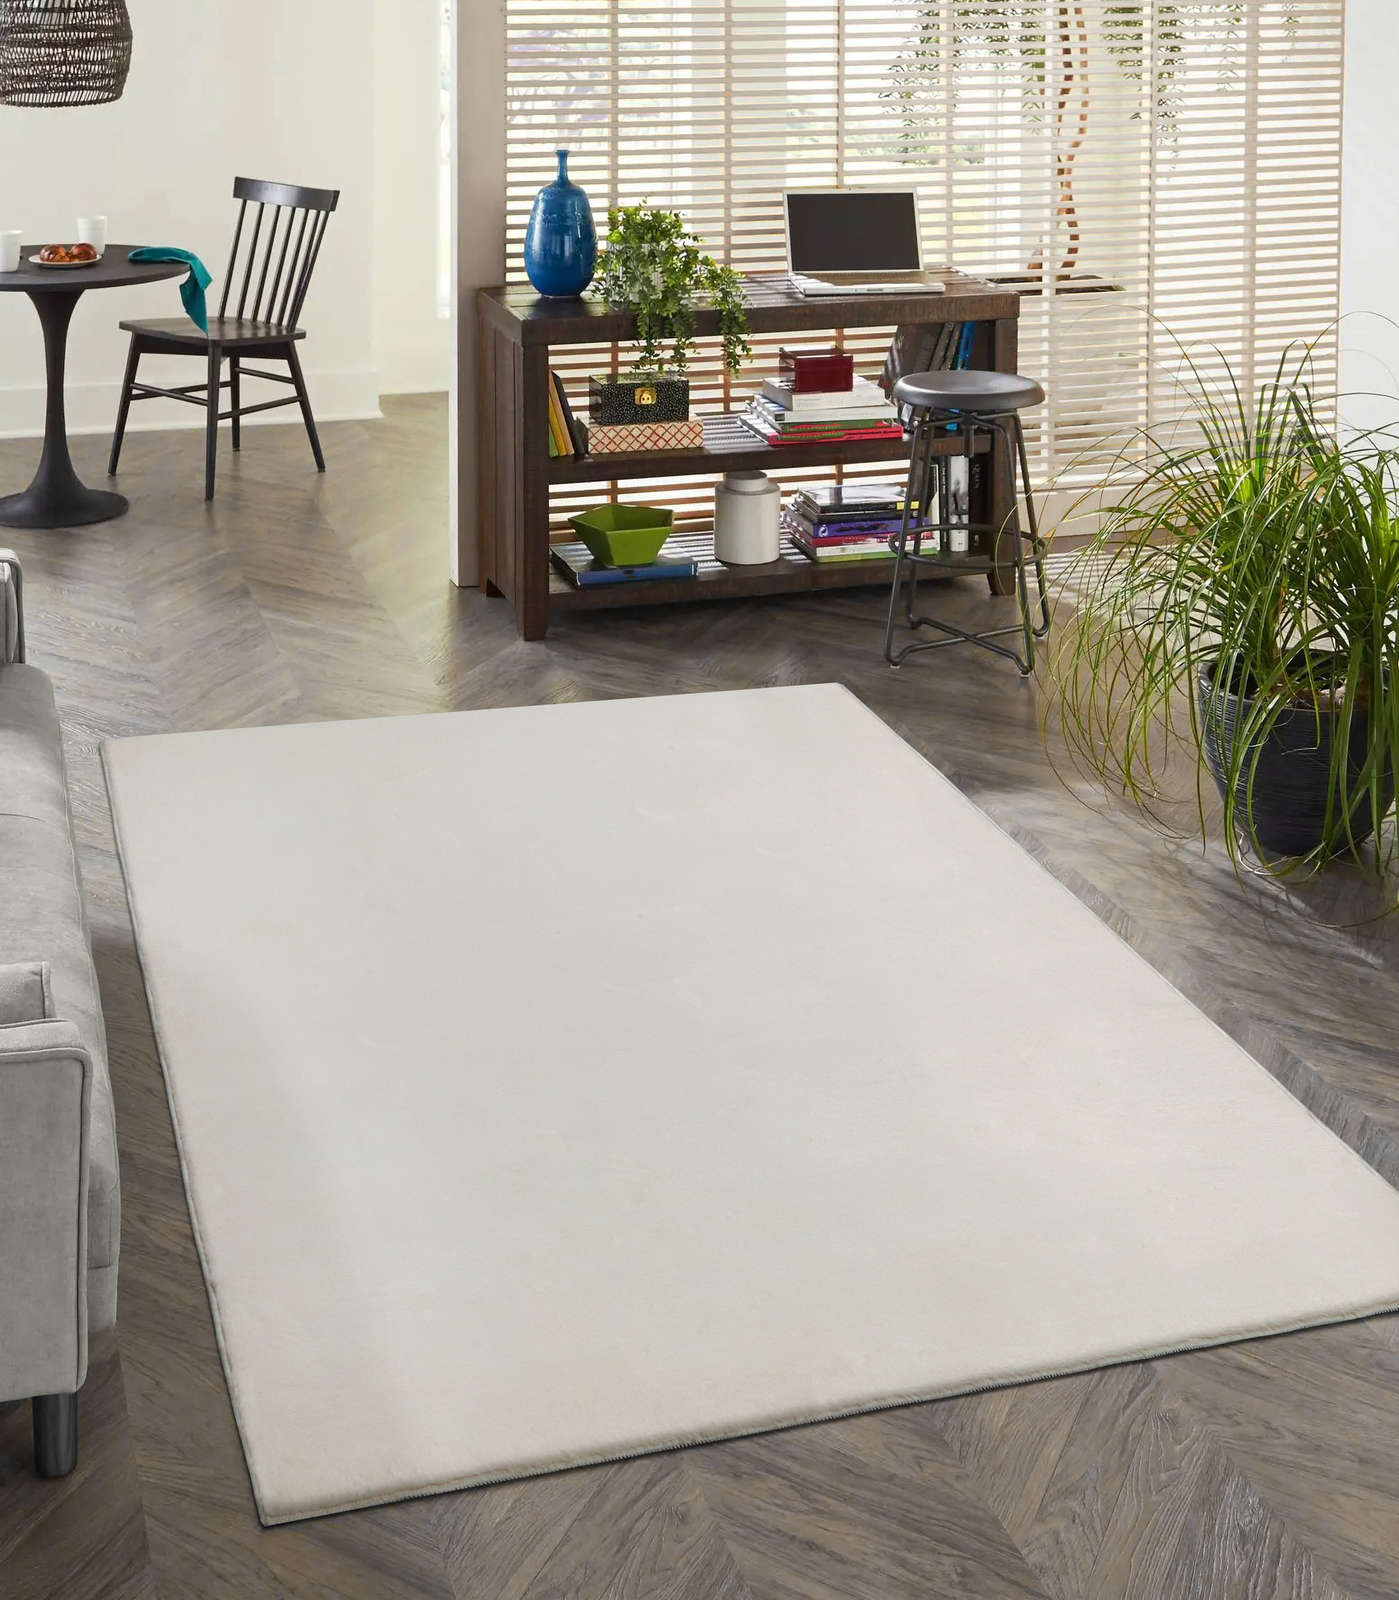             Zacht hoogpolig tapijt in crème - 340 x 240 cm
        